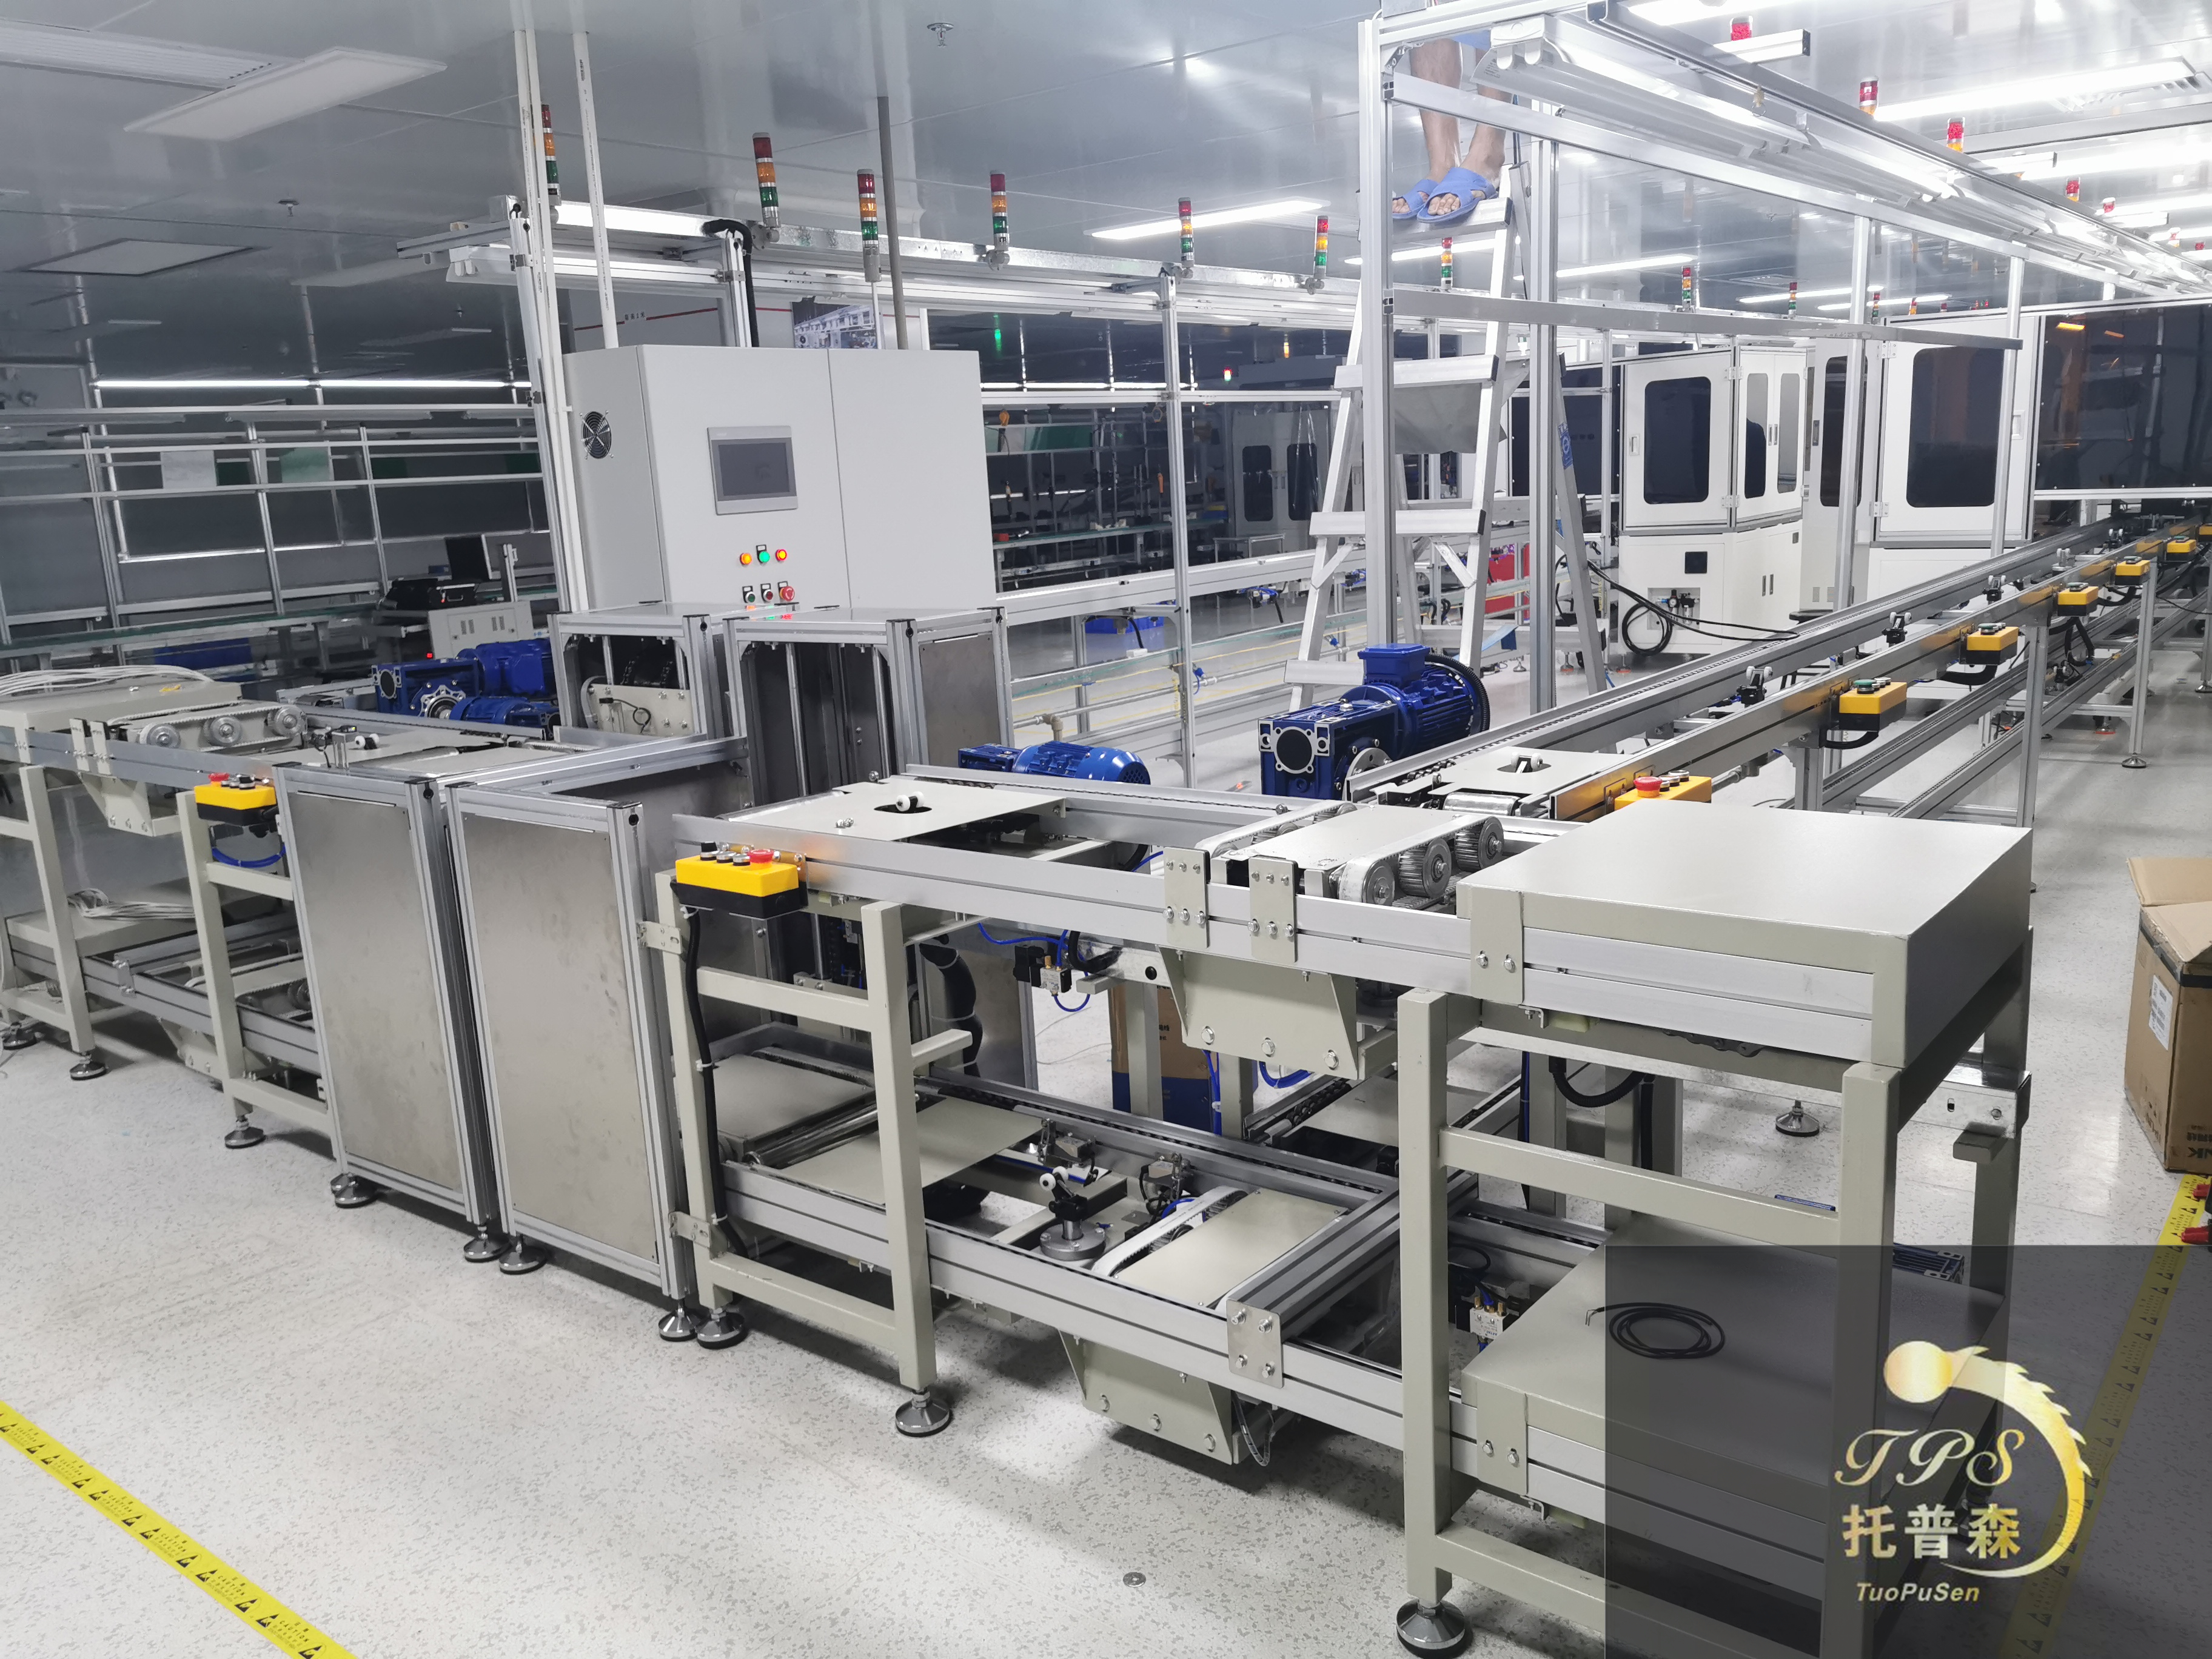 智能锁生产线4 深圳市托普森工业自动化设备有限公司